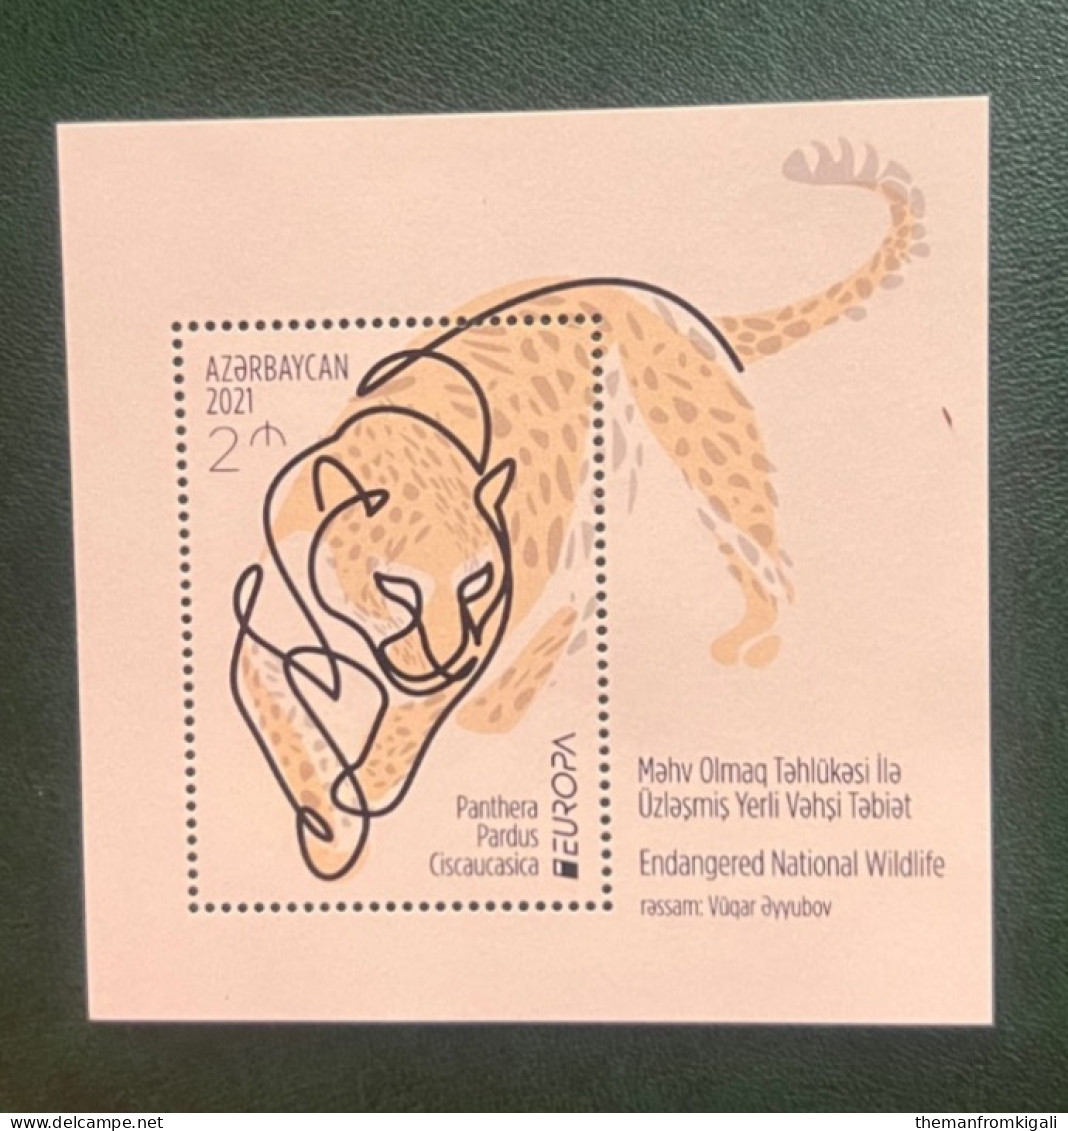 Azerbaijan 2021 - Europa Stamps - Endangered National Wildlife. - Azerbaijan